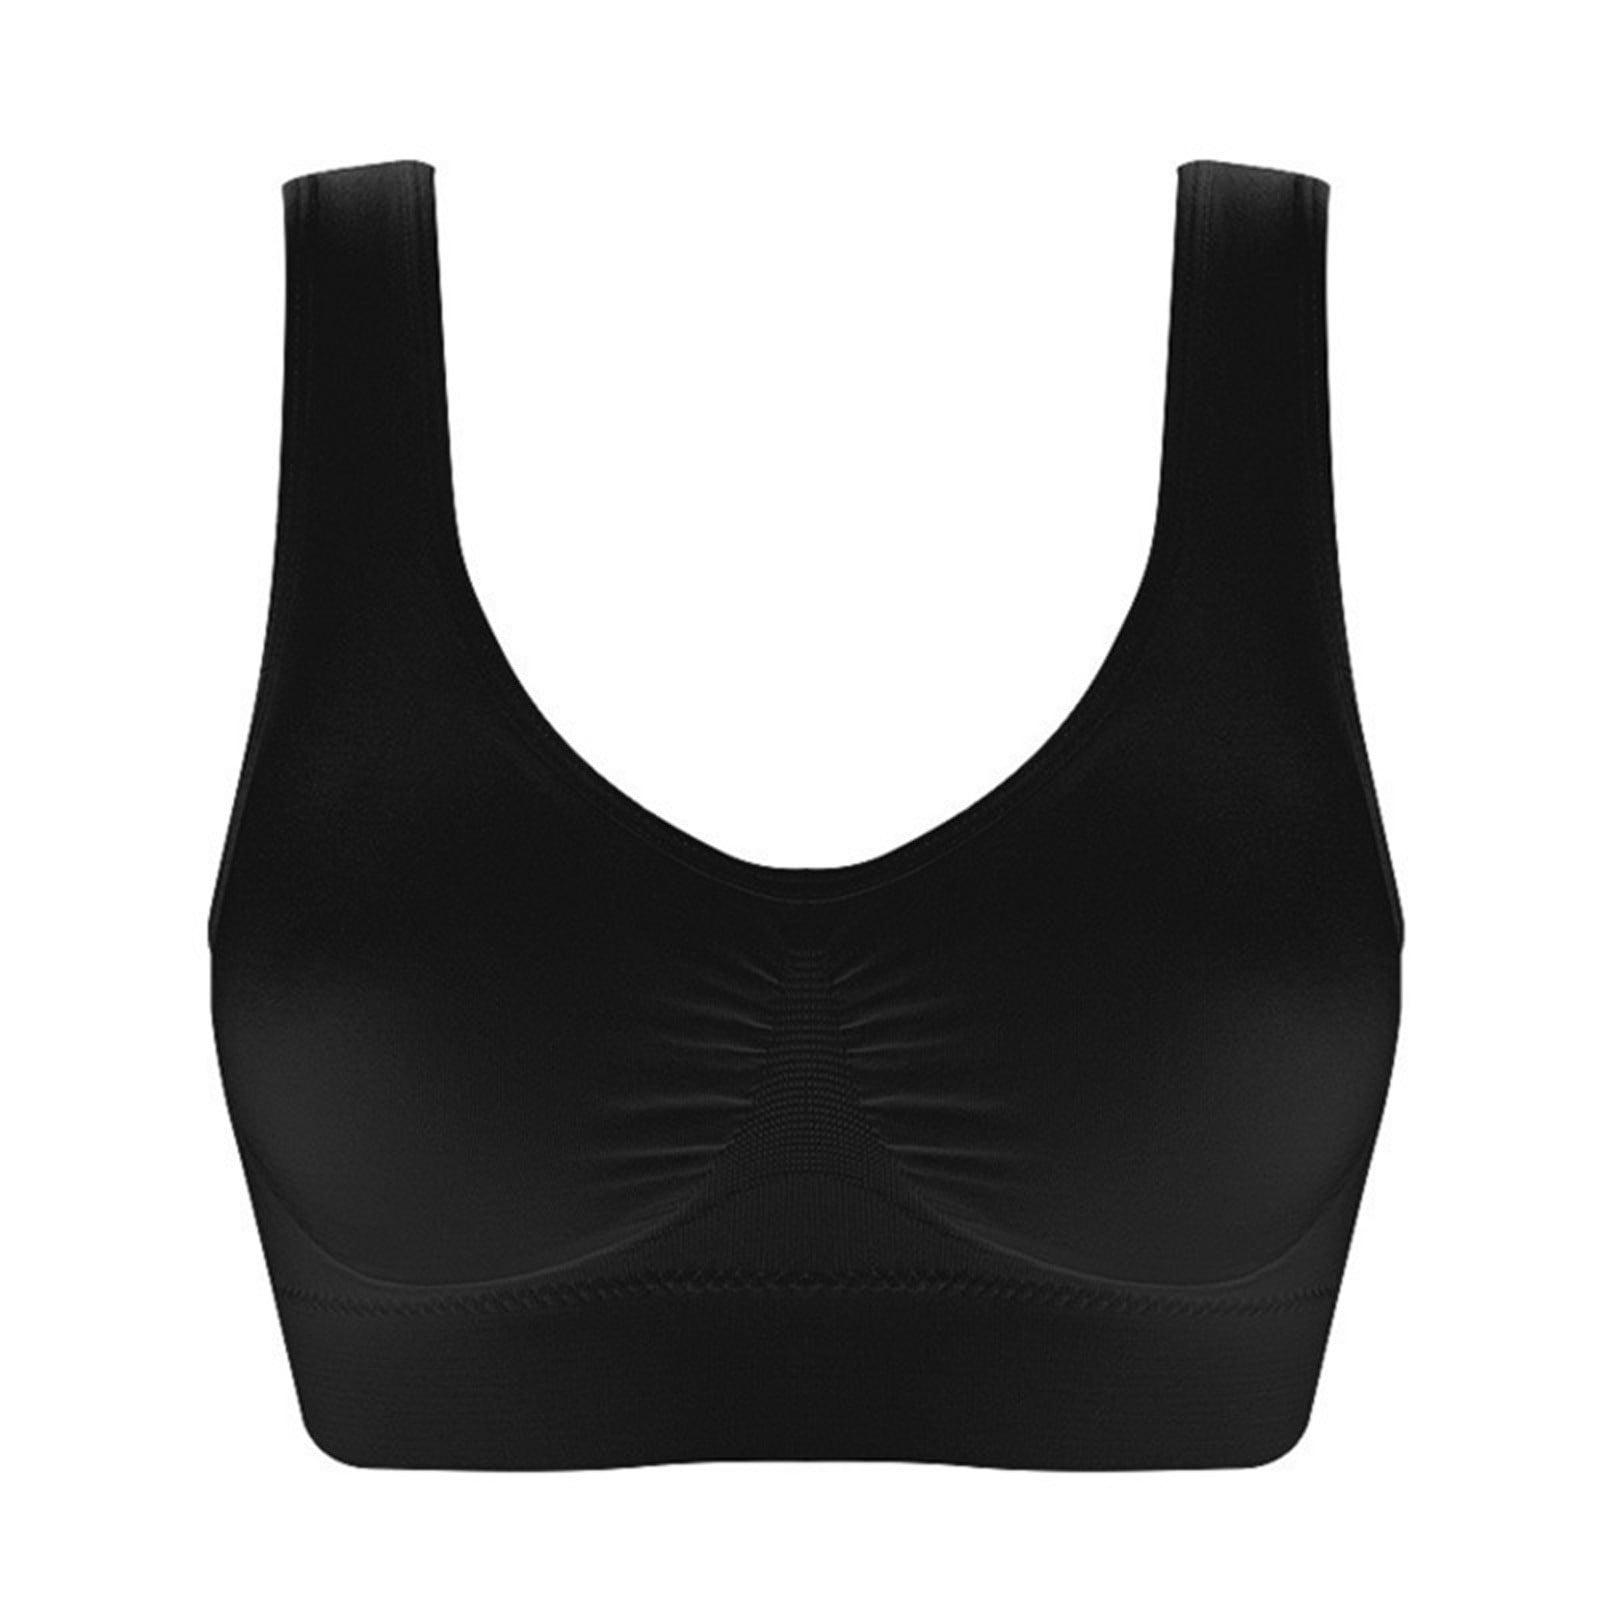 AXXD Bras For Women,Women Plus Size Bras Padded Seamless Sleepwear Yoga ...